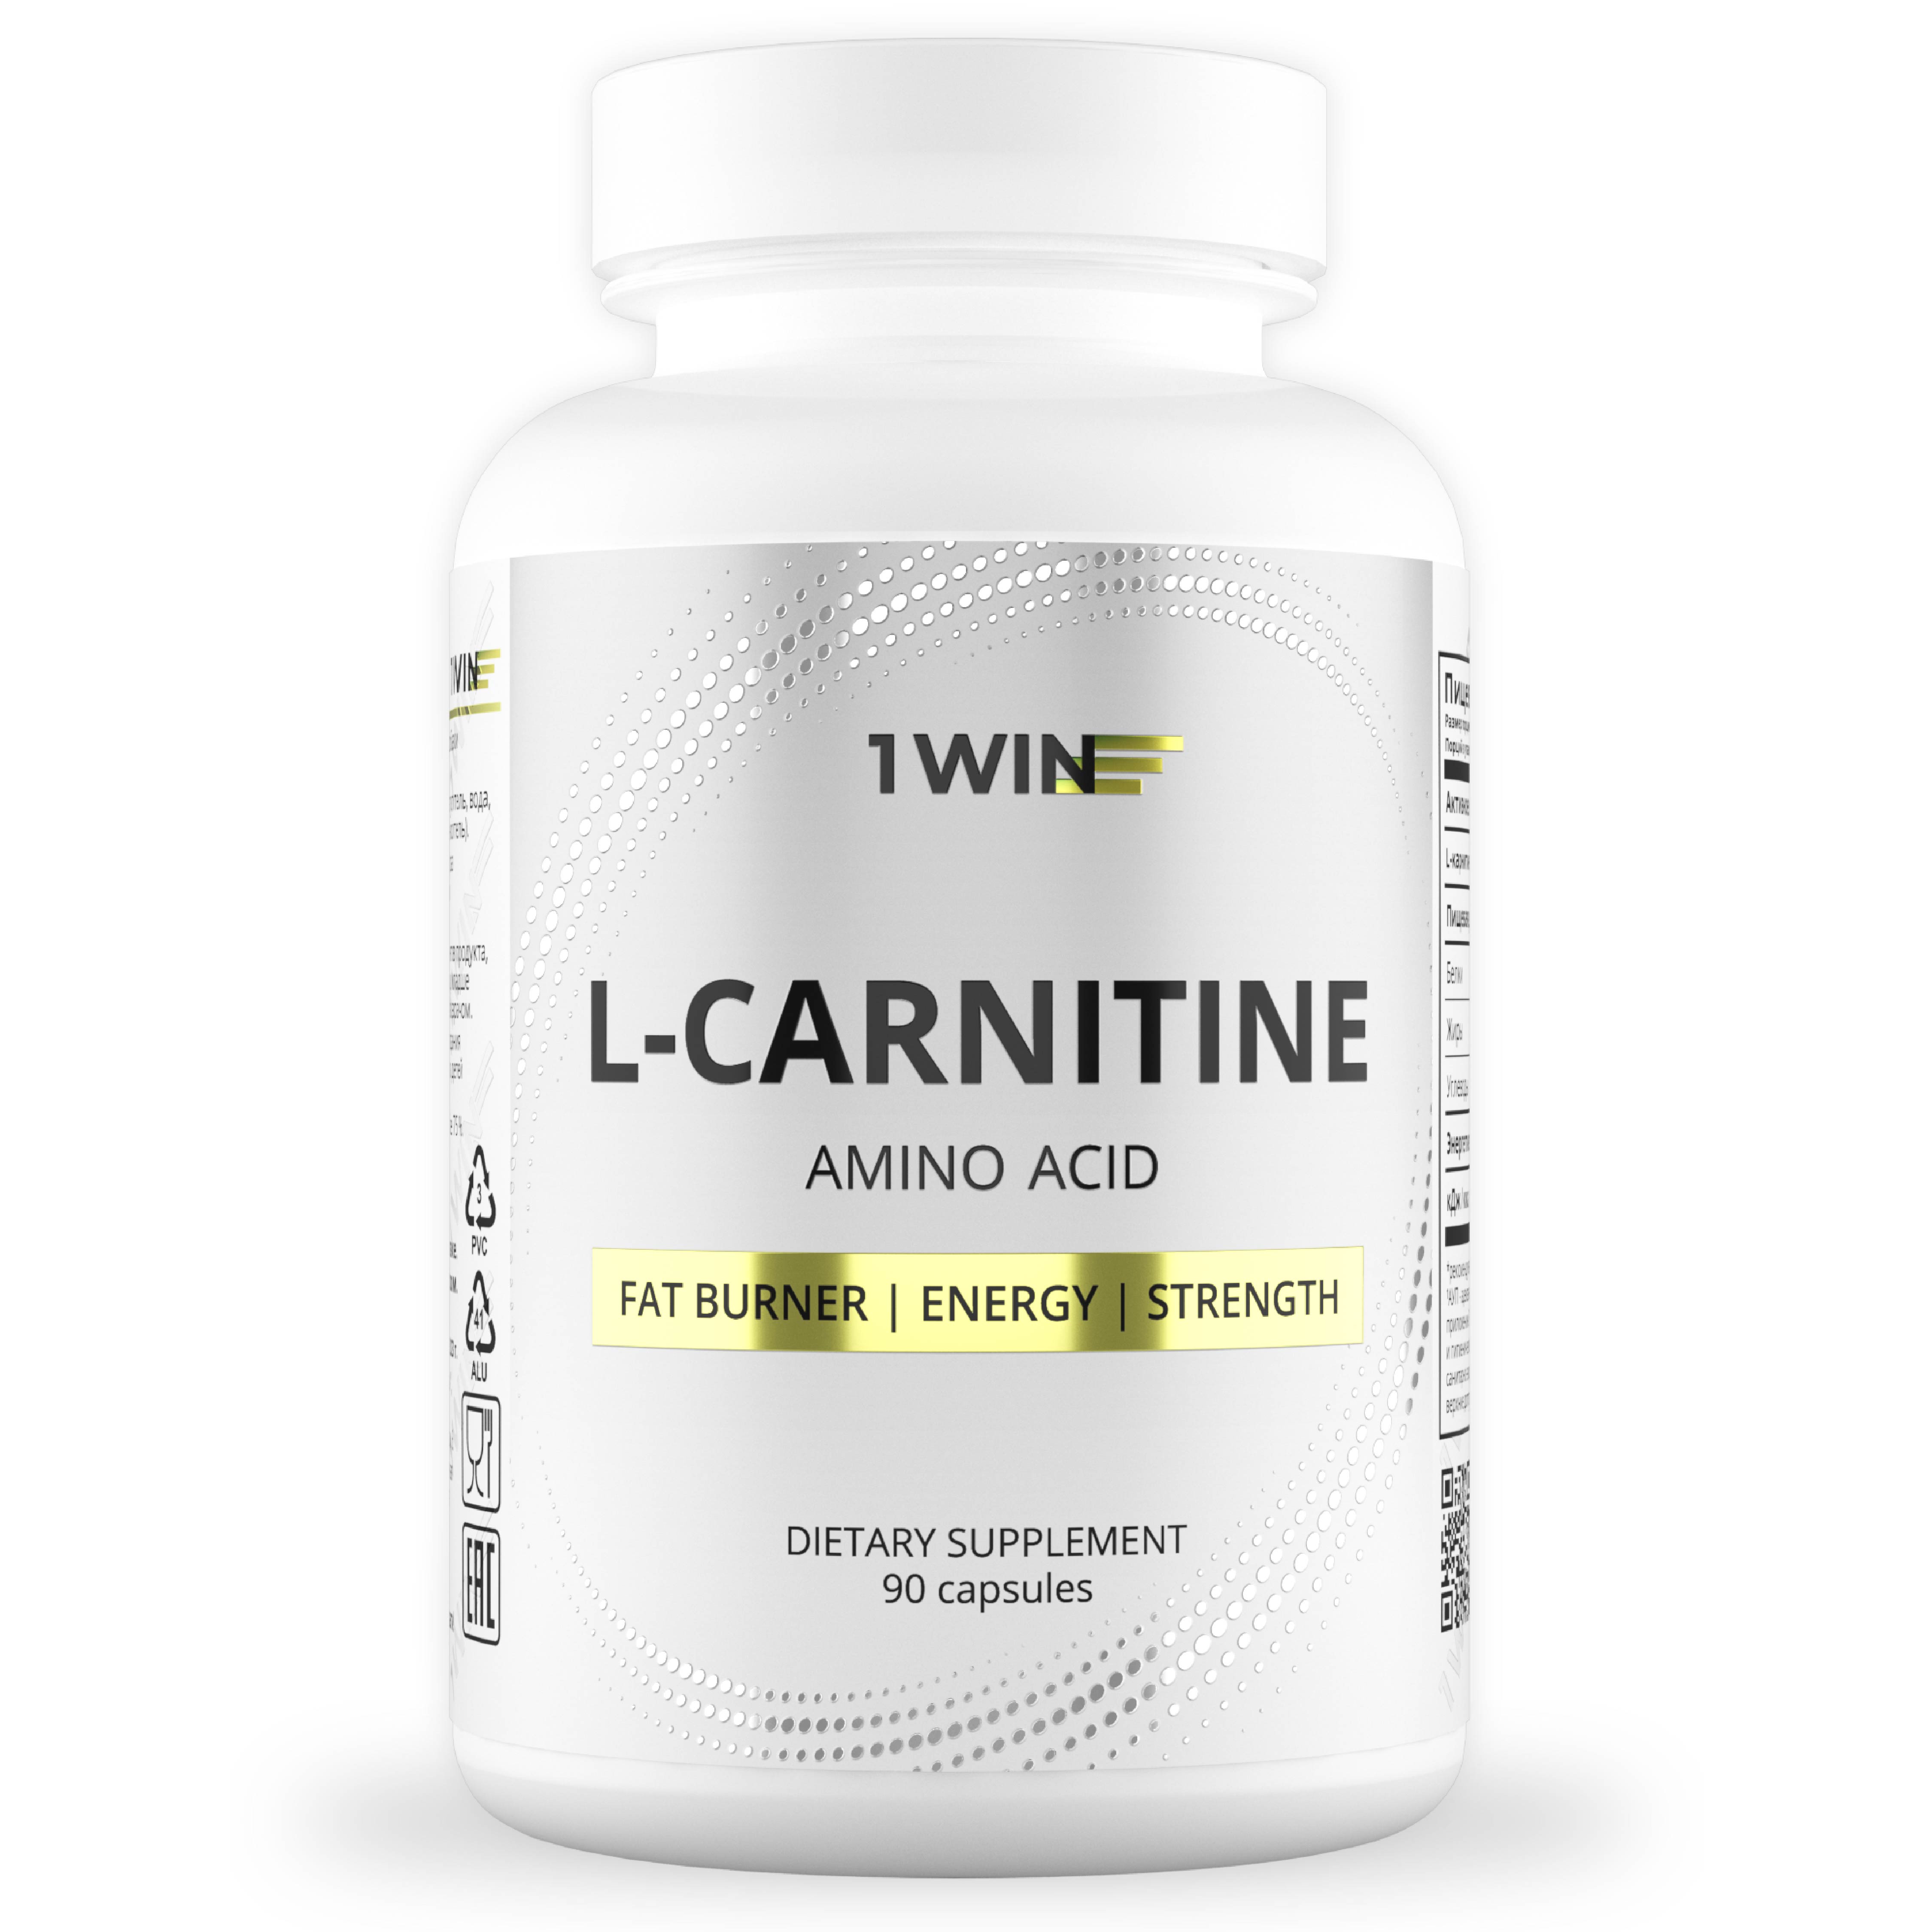 L-Carnitine 1WIN жиросжигатель спортивный для похудения, 90 капсул